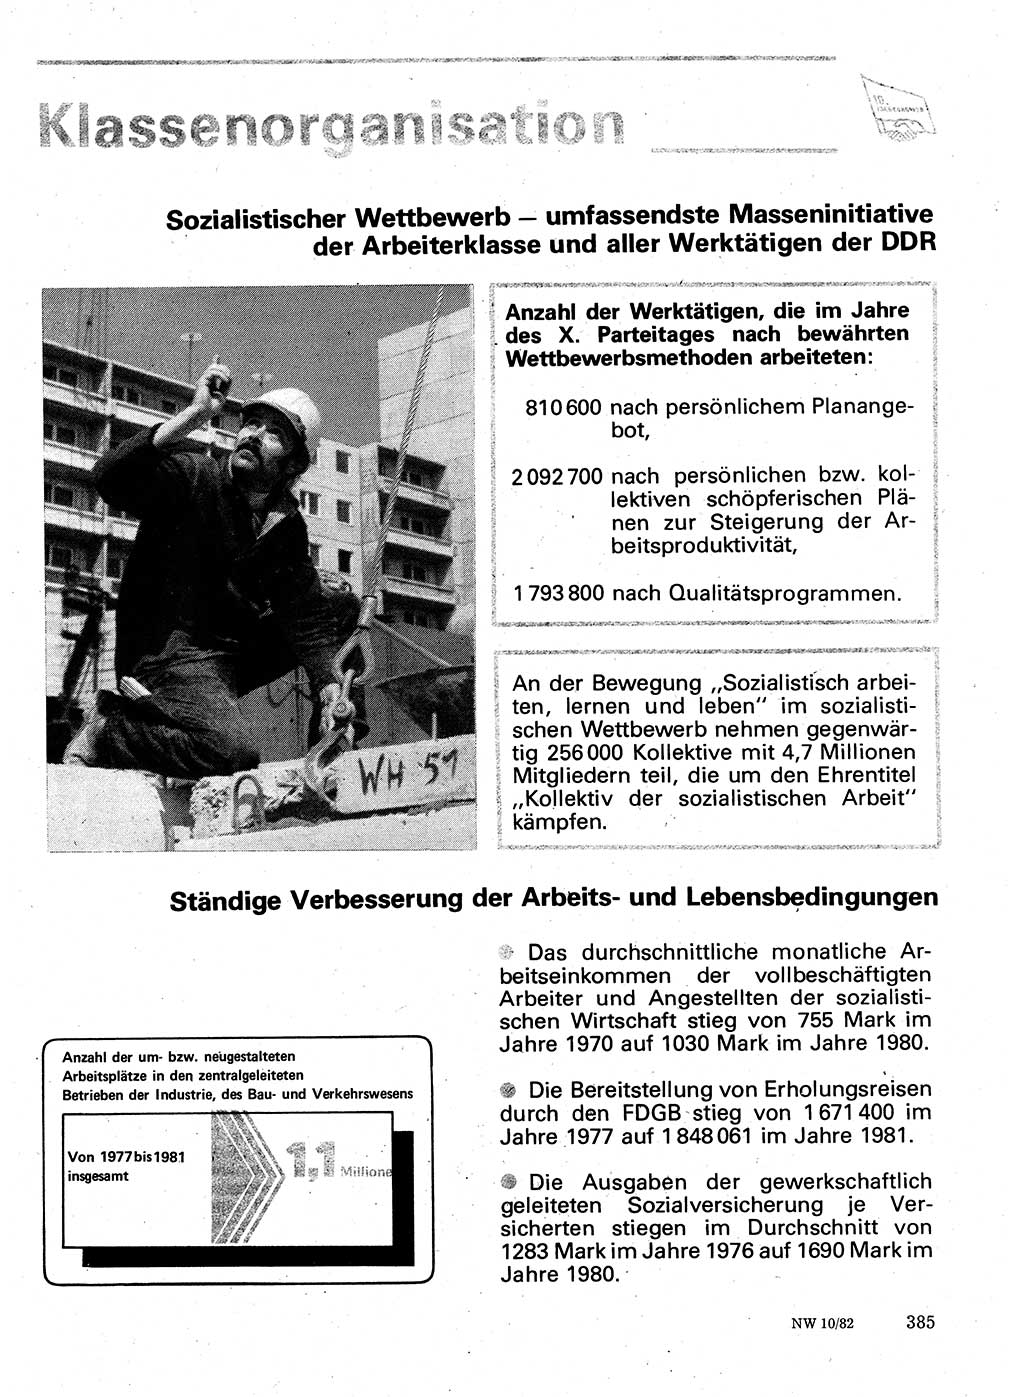 Neuer Weg (NW), Organ des Zentralkomitees (ZK) der SED (Sozialistische Einheitspartei Deutschlands) für Fragen des Parteilebens, 37. Jahrgang [Deutsche Demokratische Republik (DDR)] 1982, Seite 385 (NW ZK SED DDR 1982, S. 385)